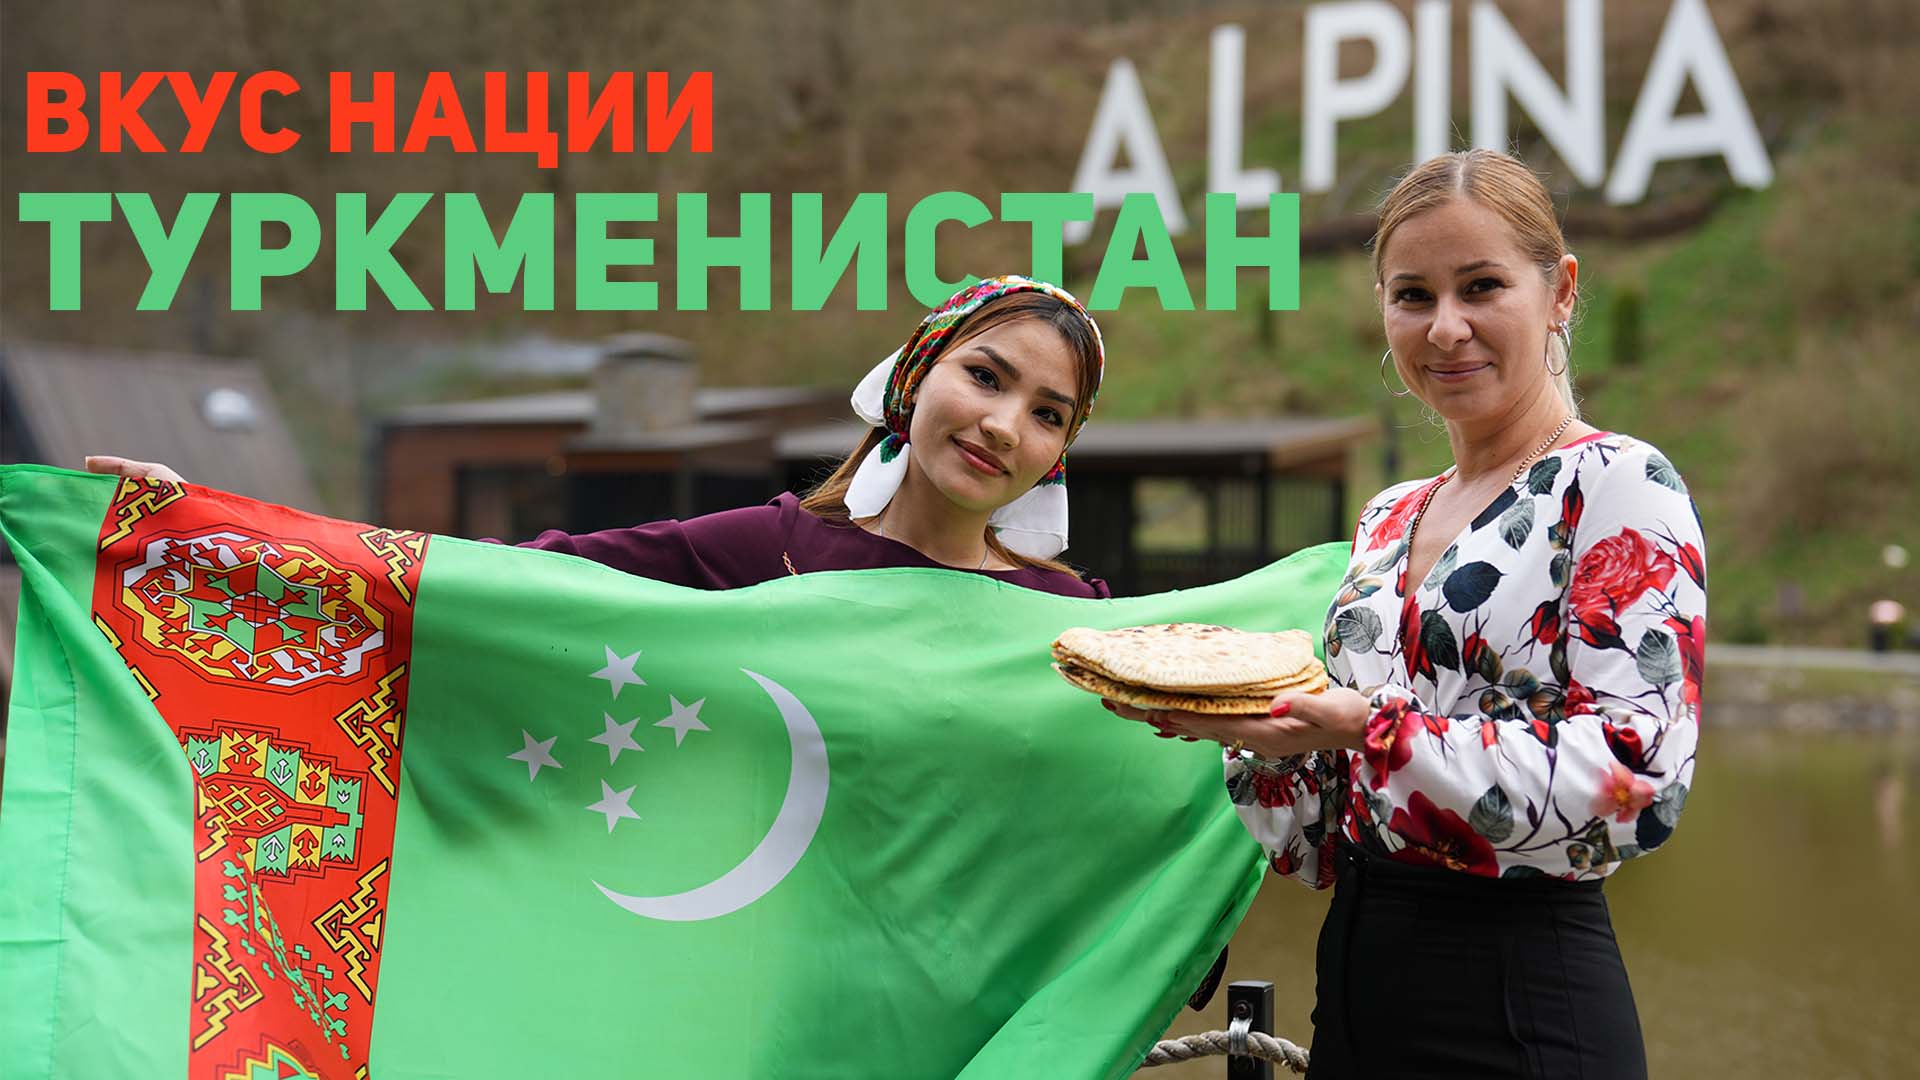 Как приготовить туркменские кутабы?|Вкус нации